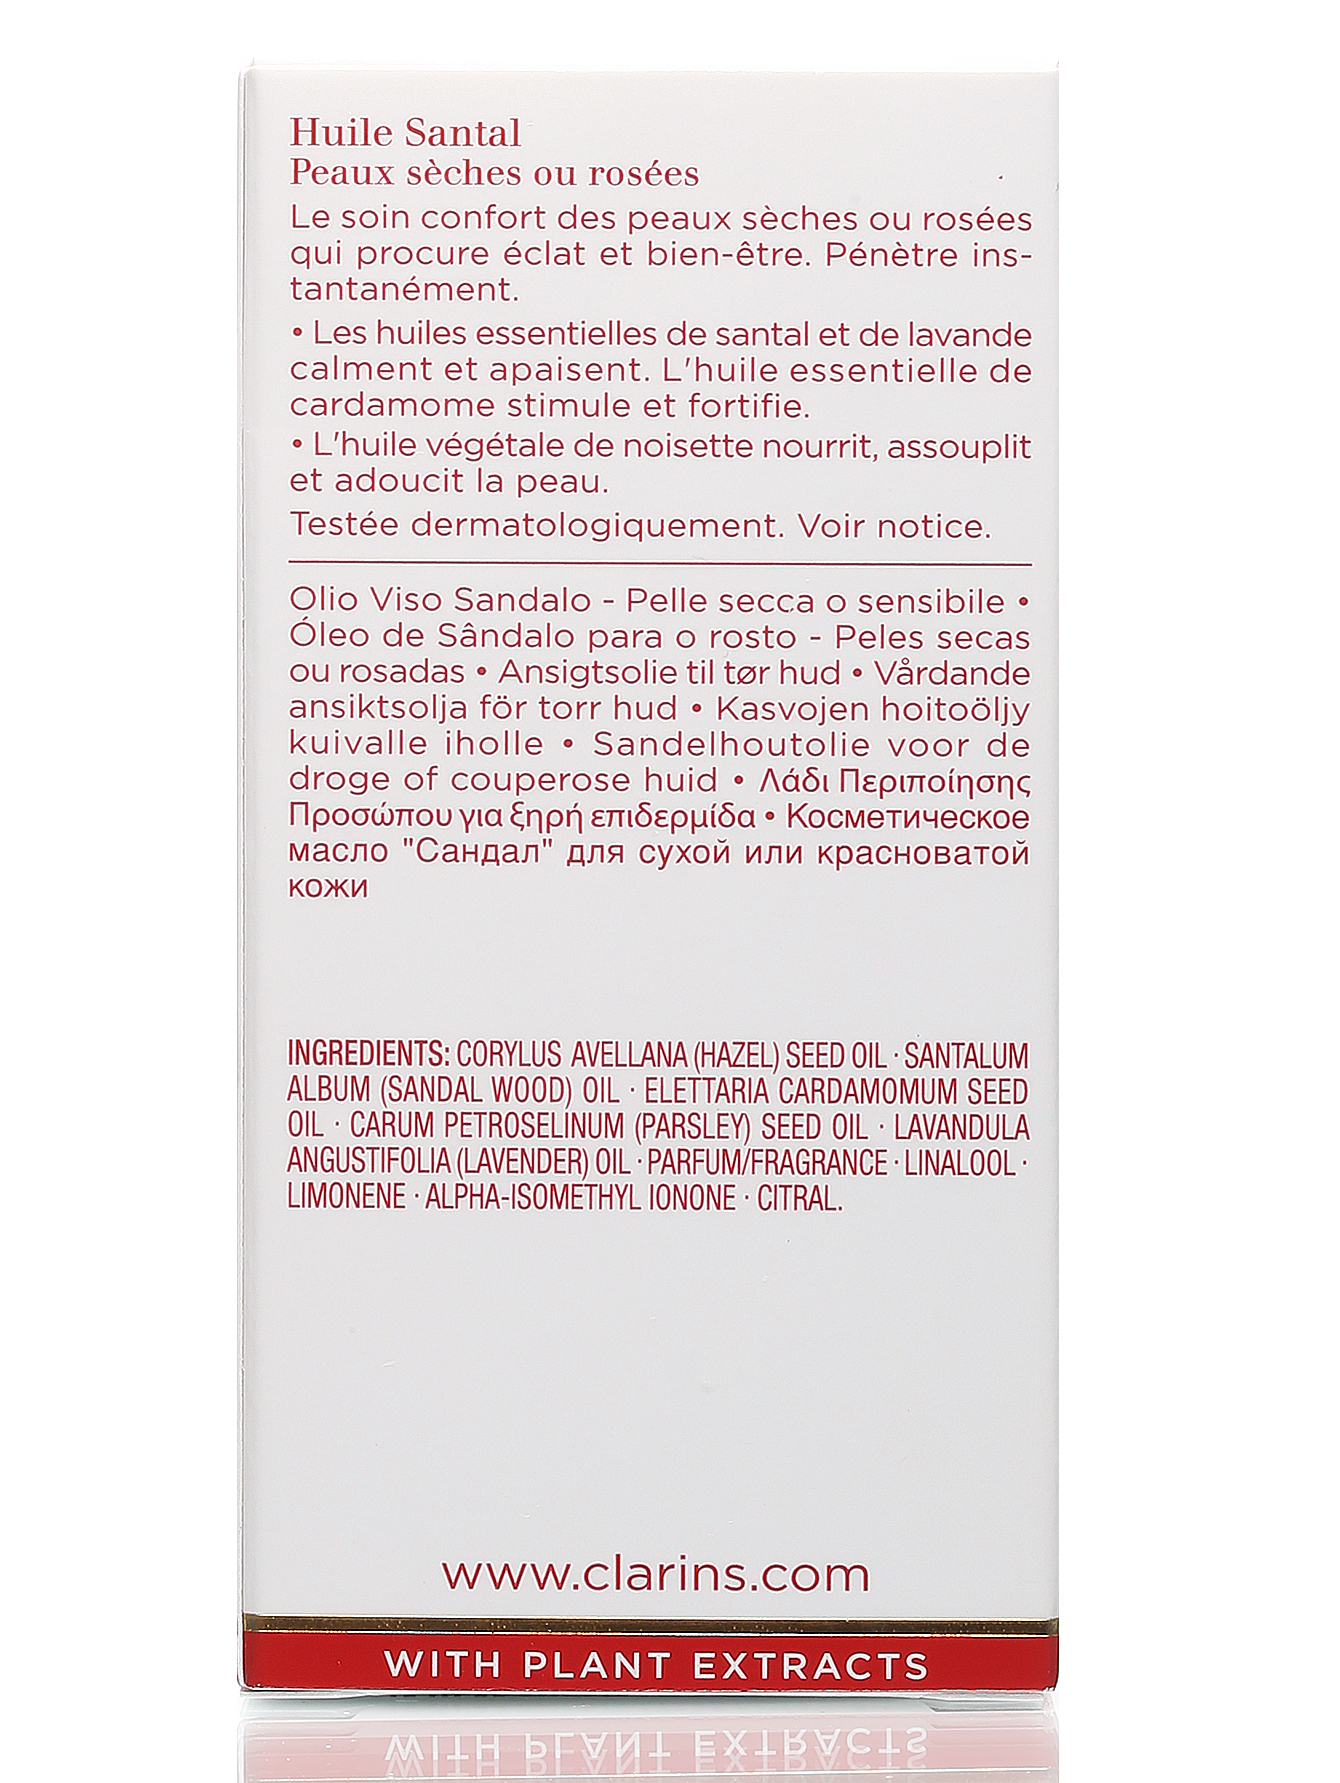 Косметическое масло для сухой, красноватой кожи - Santal, 30ml - Модель Верх-Низ